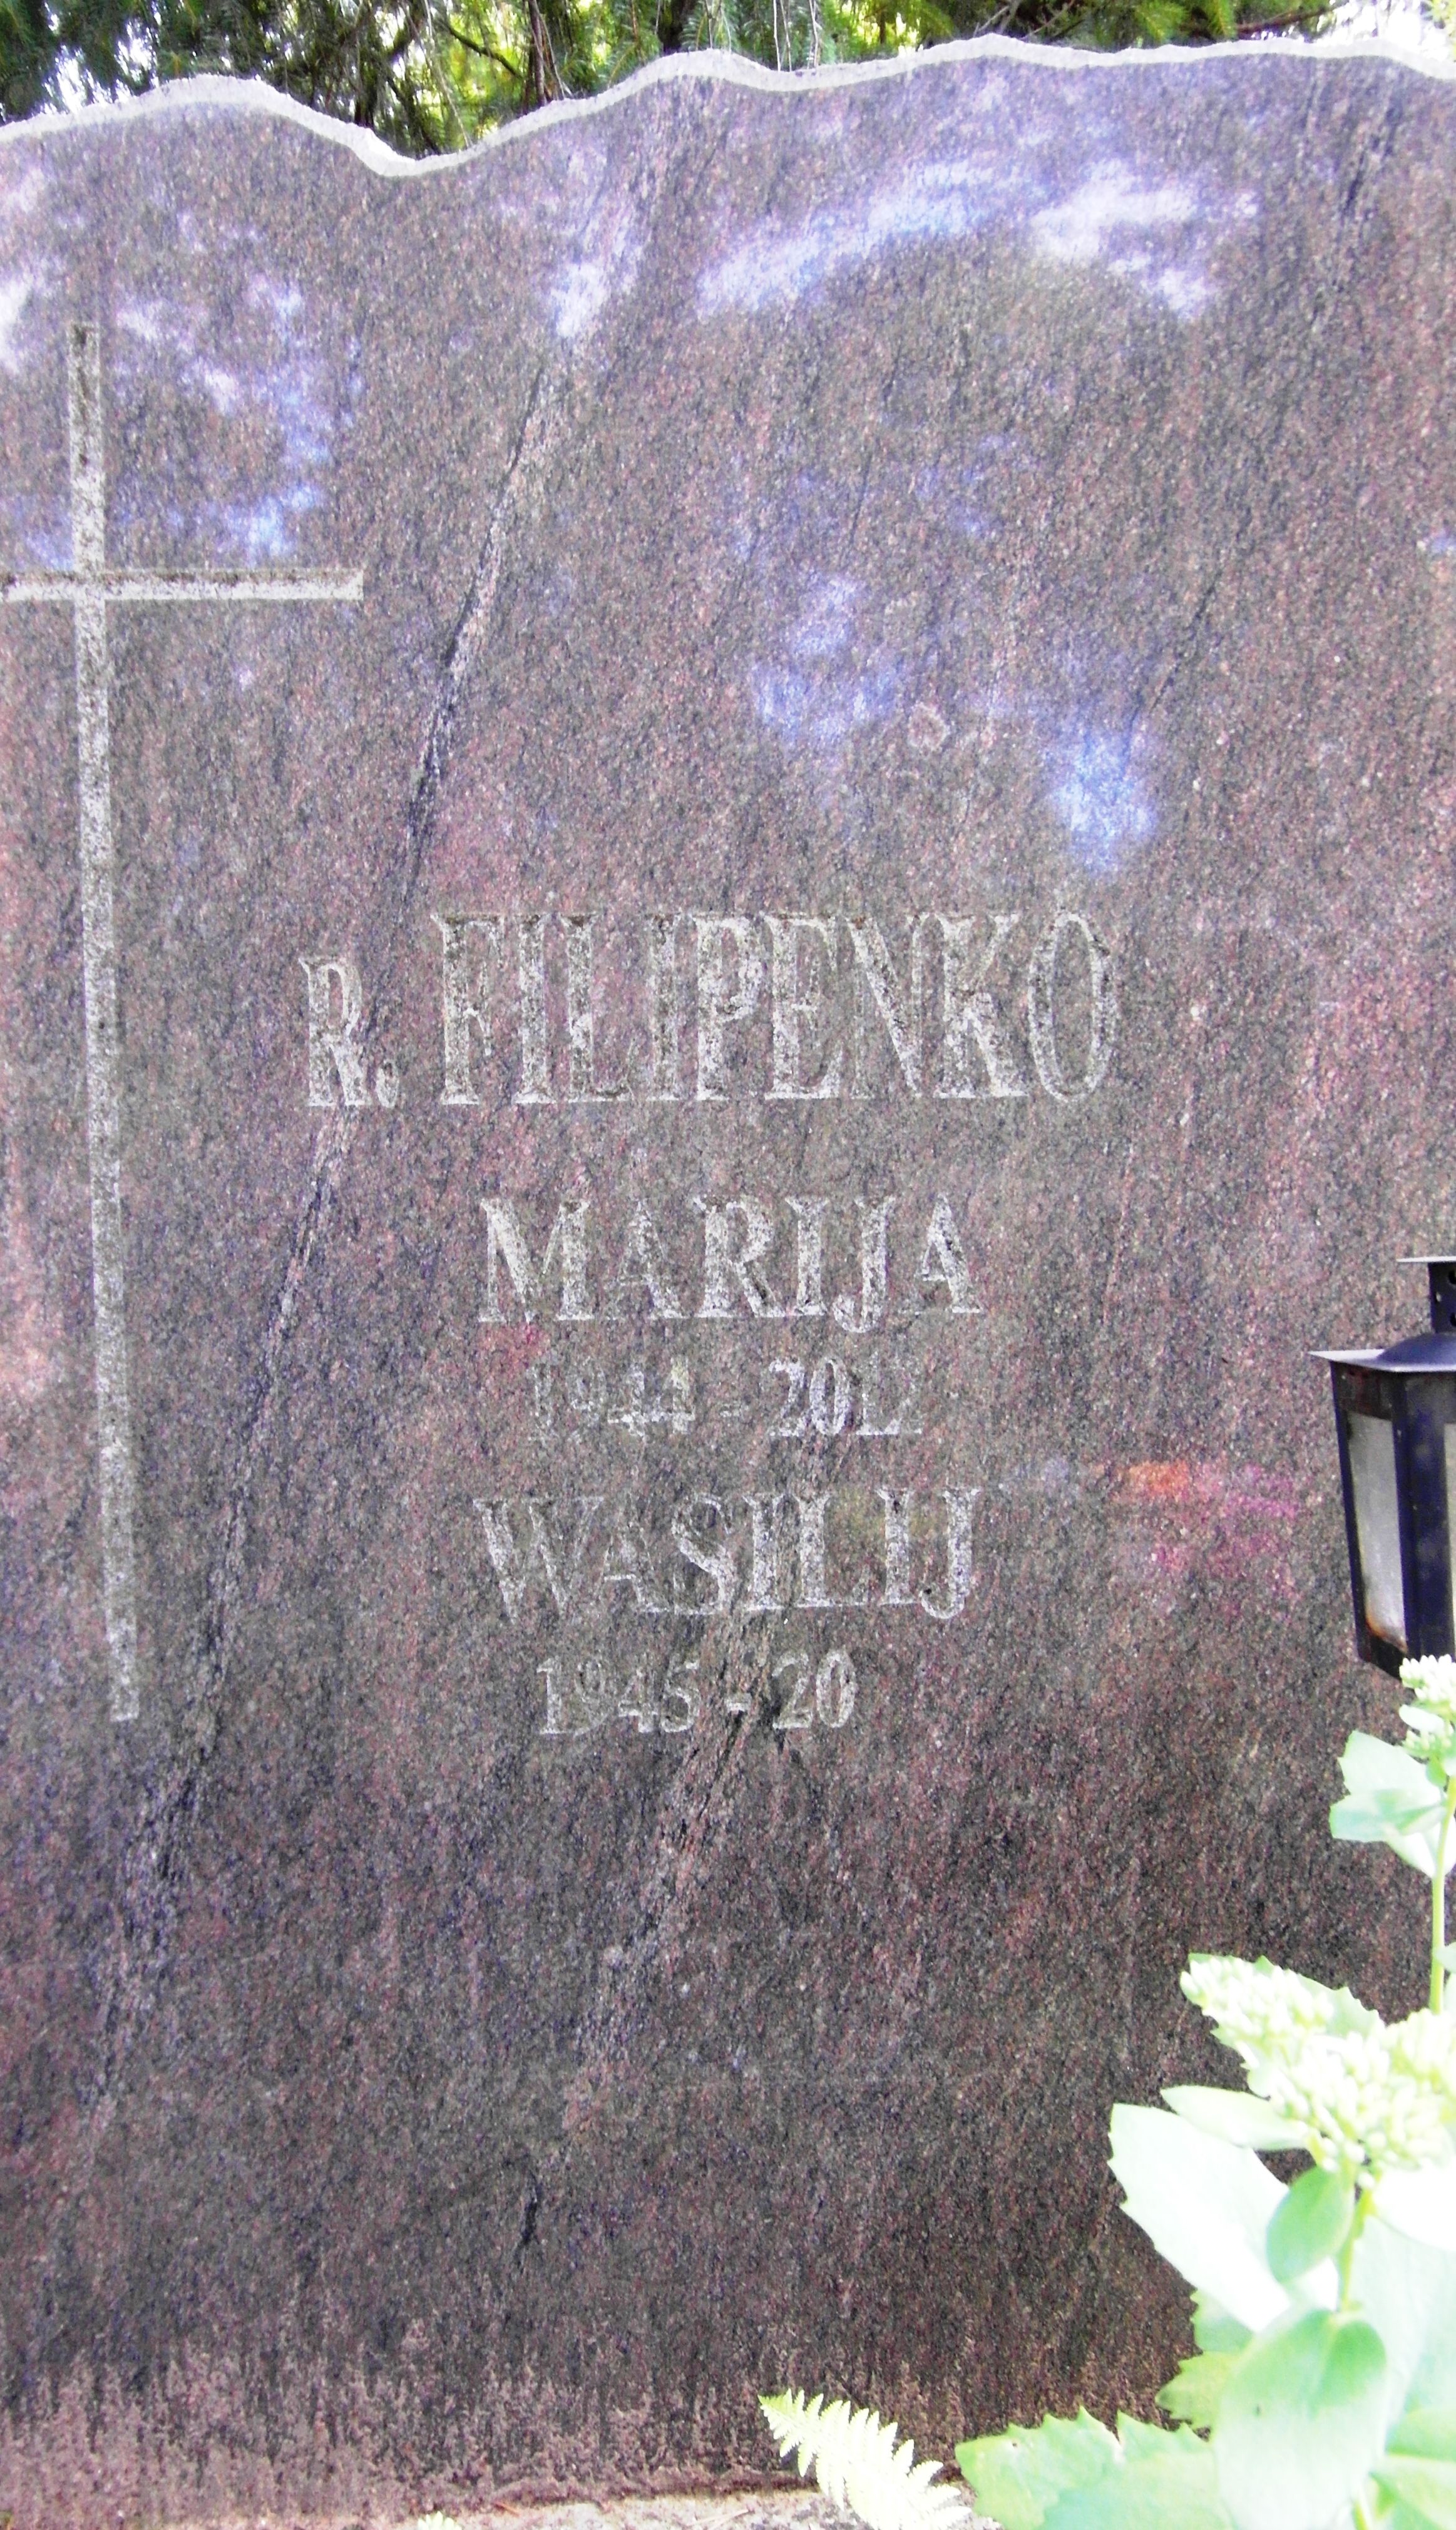 Napis z nagrobka rodzin Grudzińskich i Filipenko, cmentarz św. Michała w Rydze, stan z 2021 r.